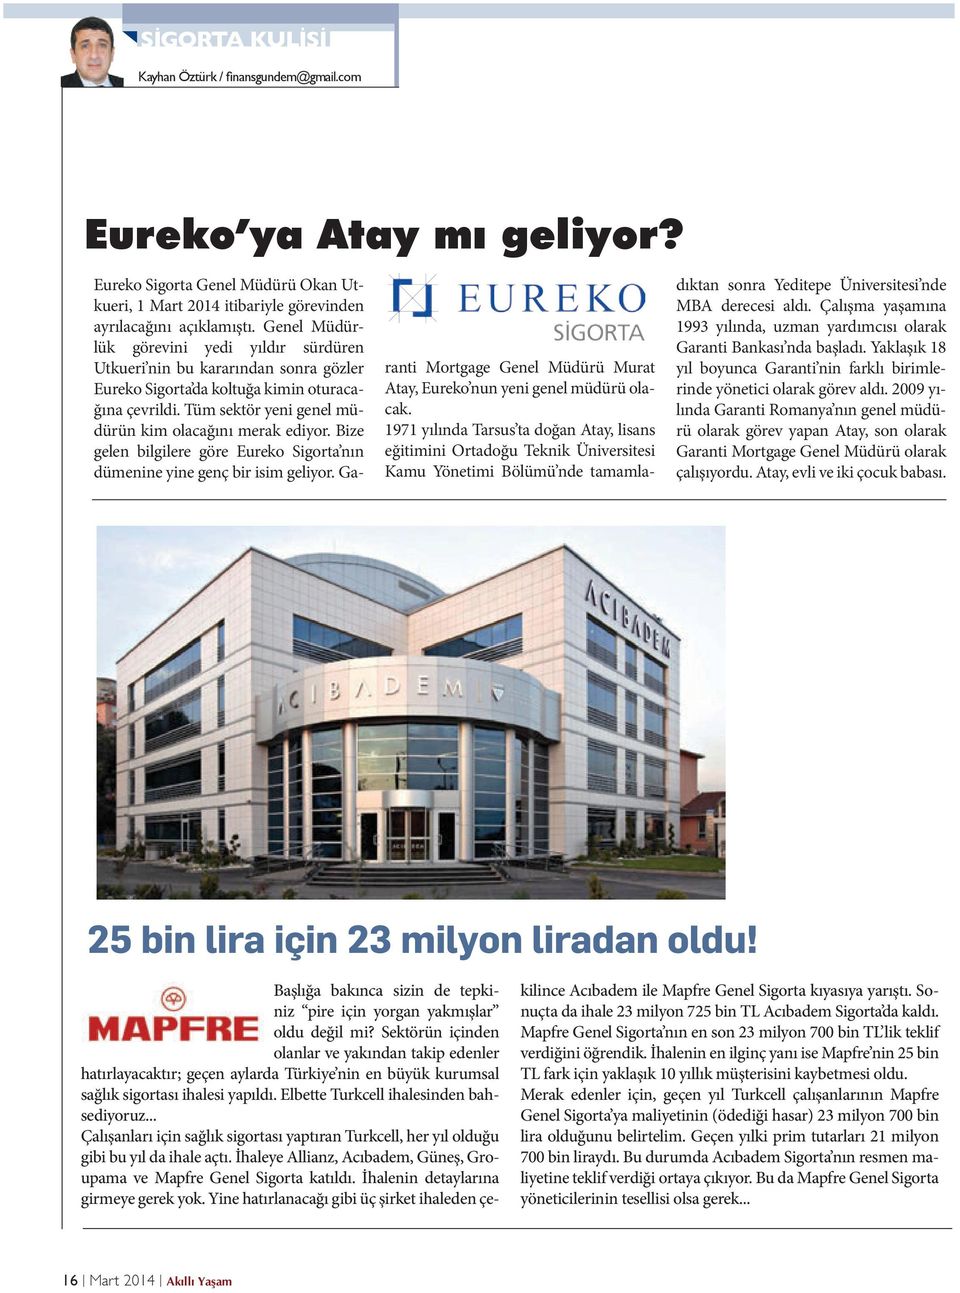 Bize gelen bilgilere göre Eureko Sigorta nın dümenine yine genç bir isim geliyor. Garanti Mortgage Genel Müdürü Murat Atay, Eureko nun yeni genel müdürü olacak.